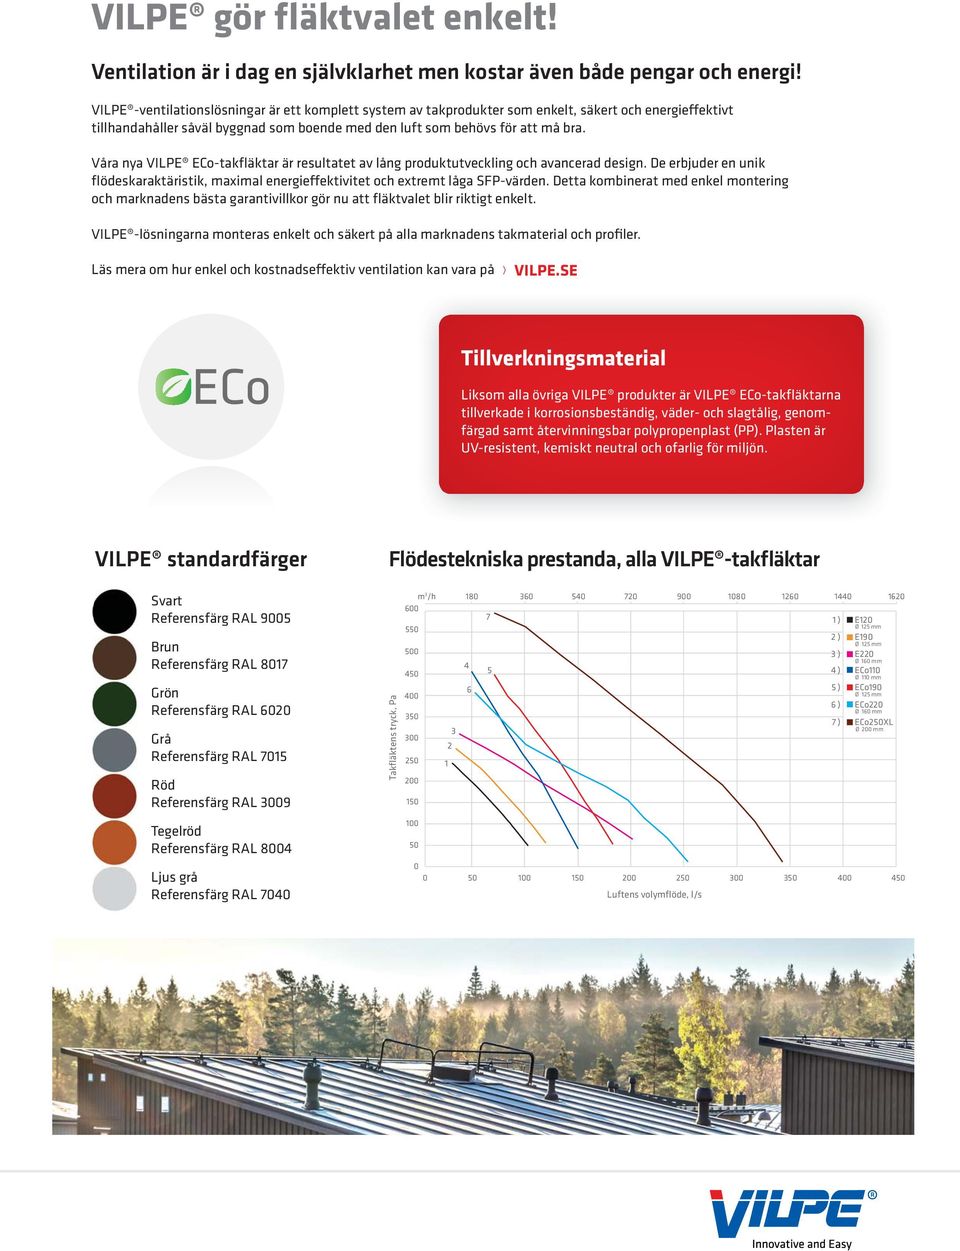 Våra nya VILPE ECo-takfläktar är resultatet av lång produktutveckling och avancerad design. De erbjuder en unik flödeskaraktäristik, maximal energieffektivitet och extremt låga SFP-värden.